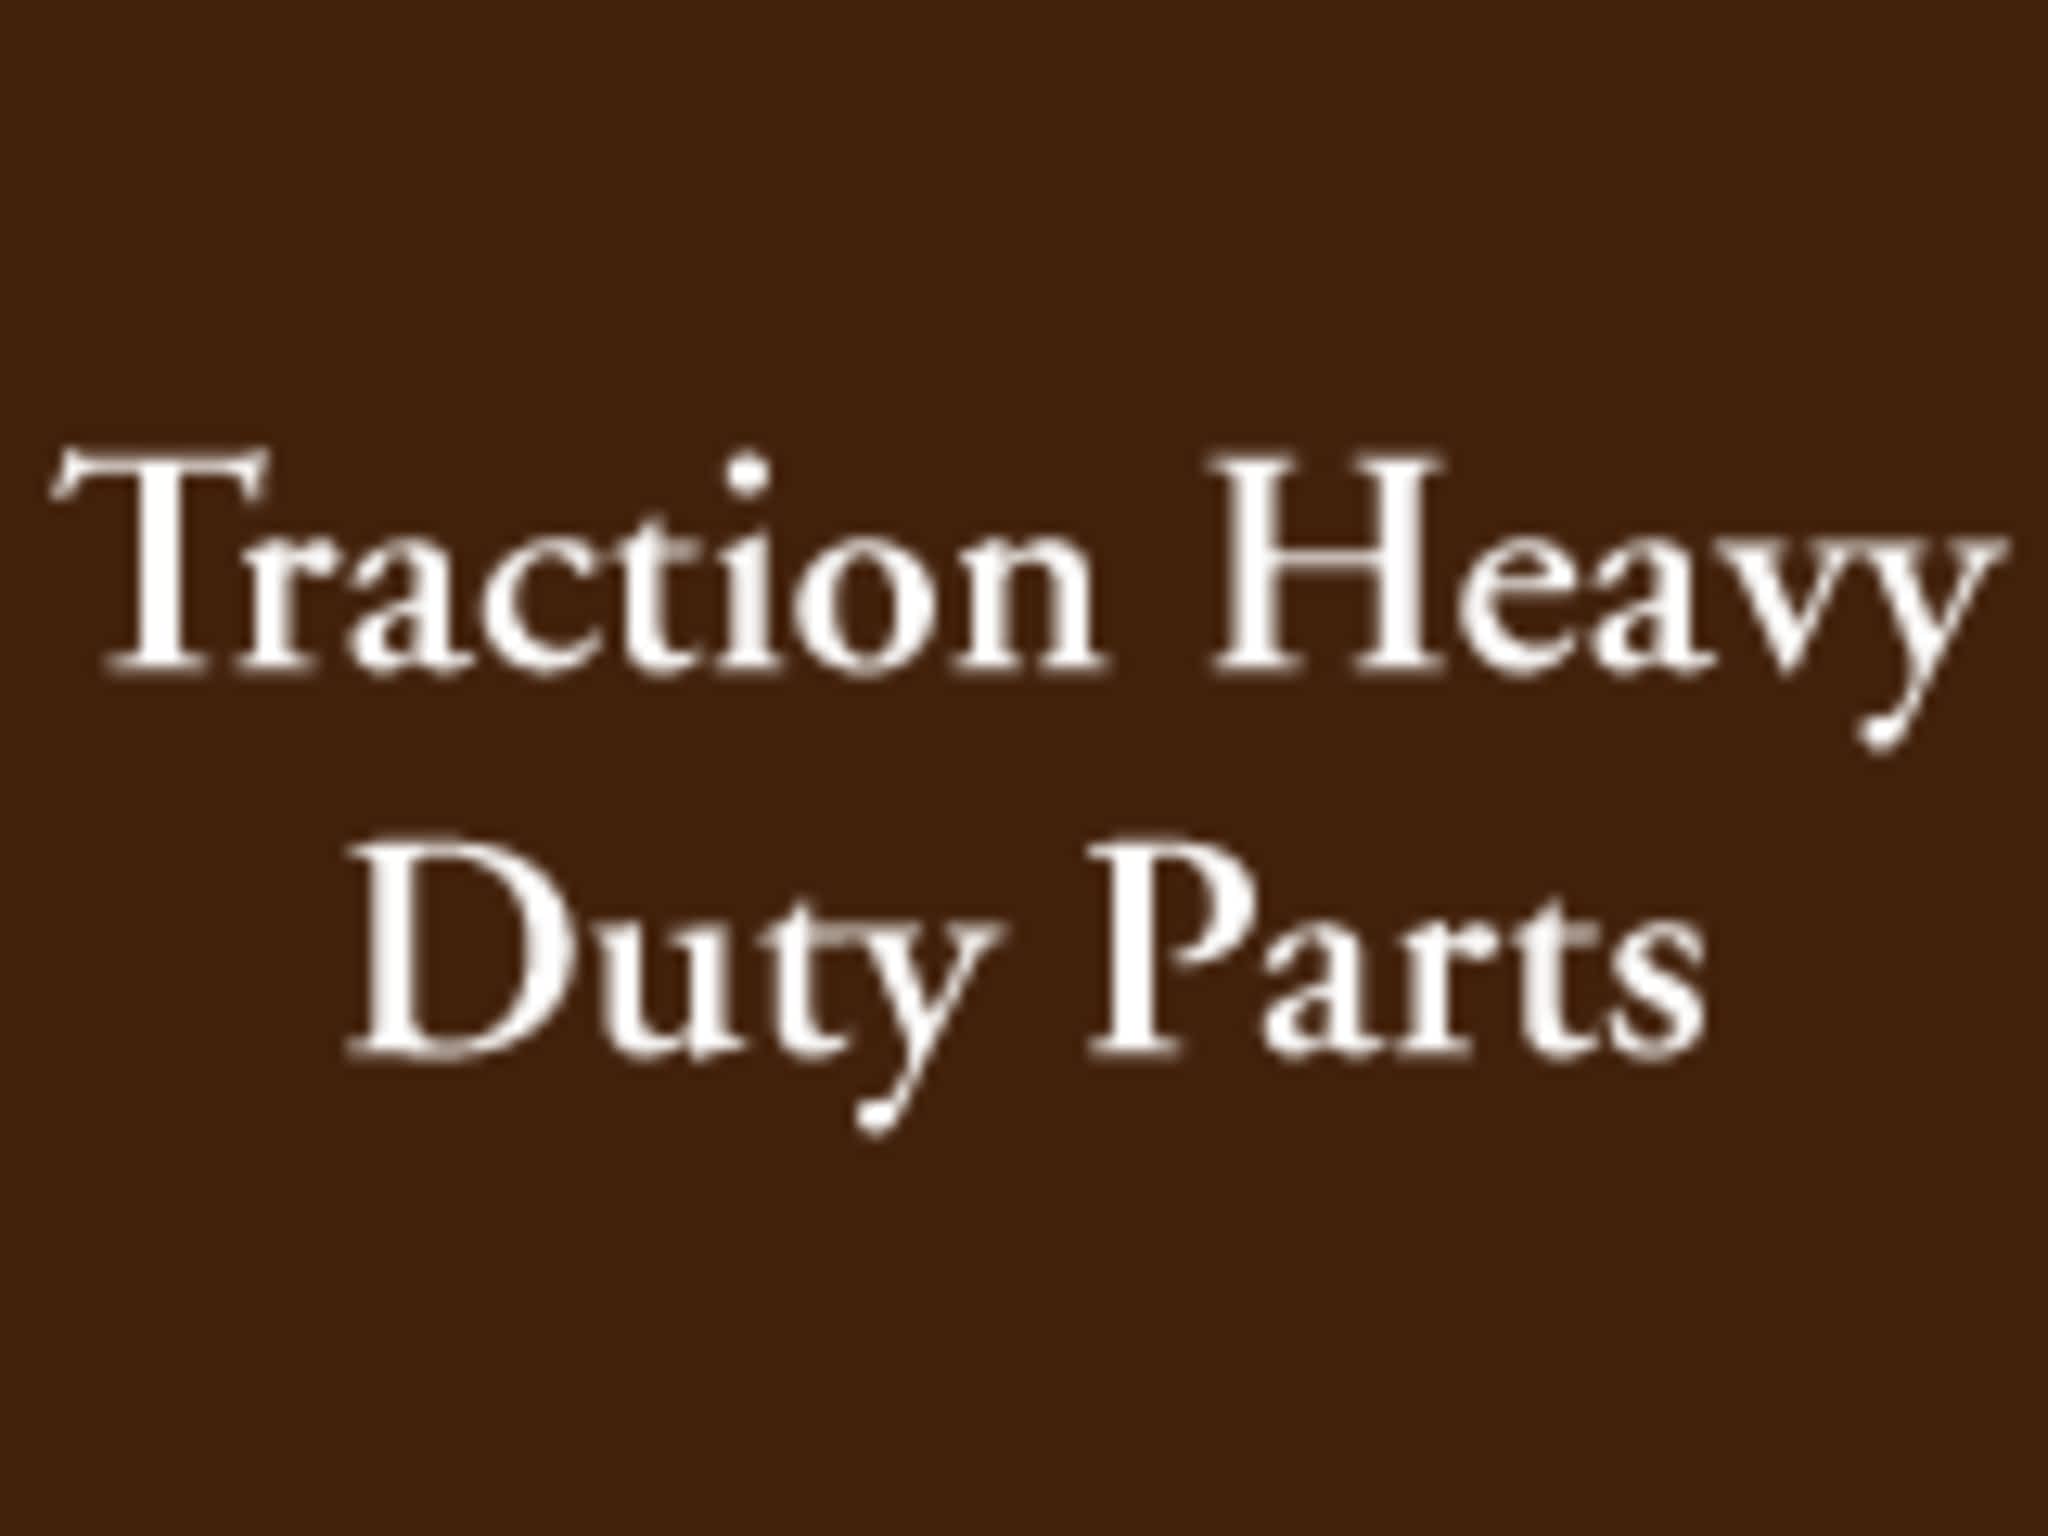 photo Traction Heavy Duty Parts